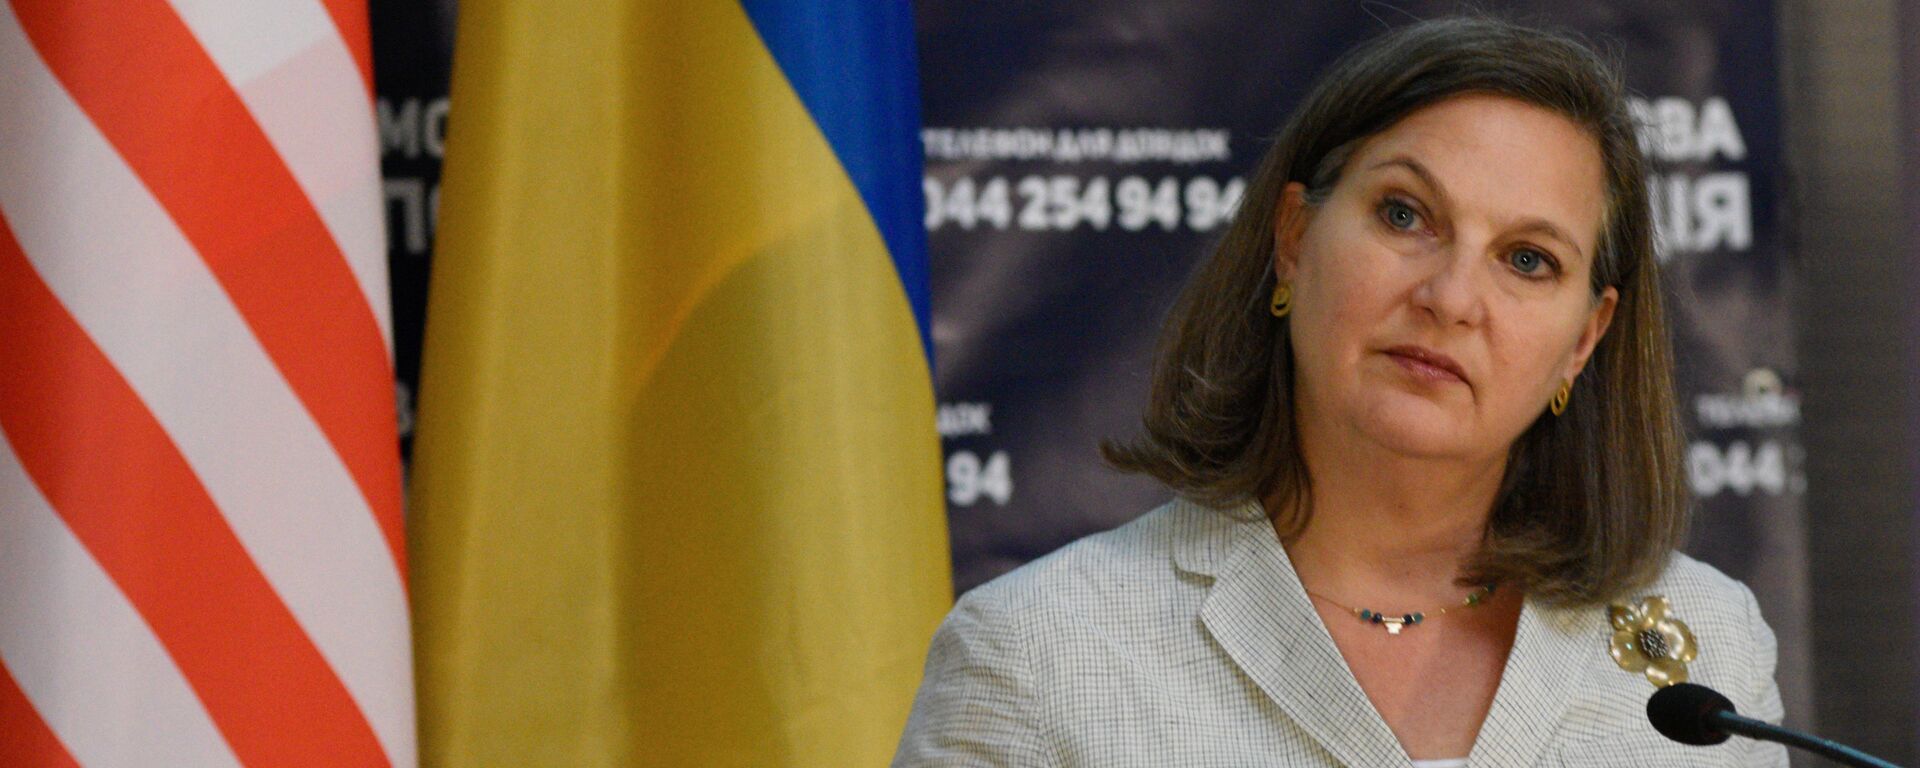 Помощник госсекретаря США Виктория Нуланд в Киеве - Sputnik Latvija, 1920, 24.05.2019